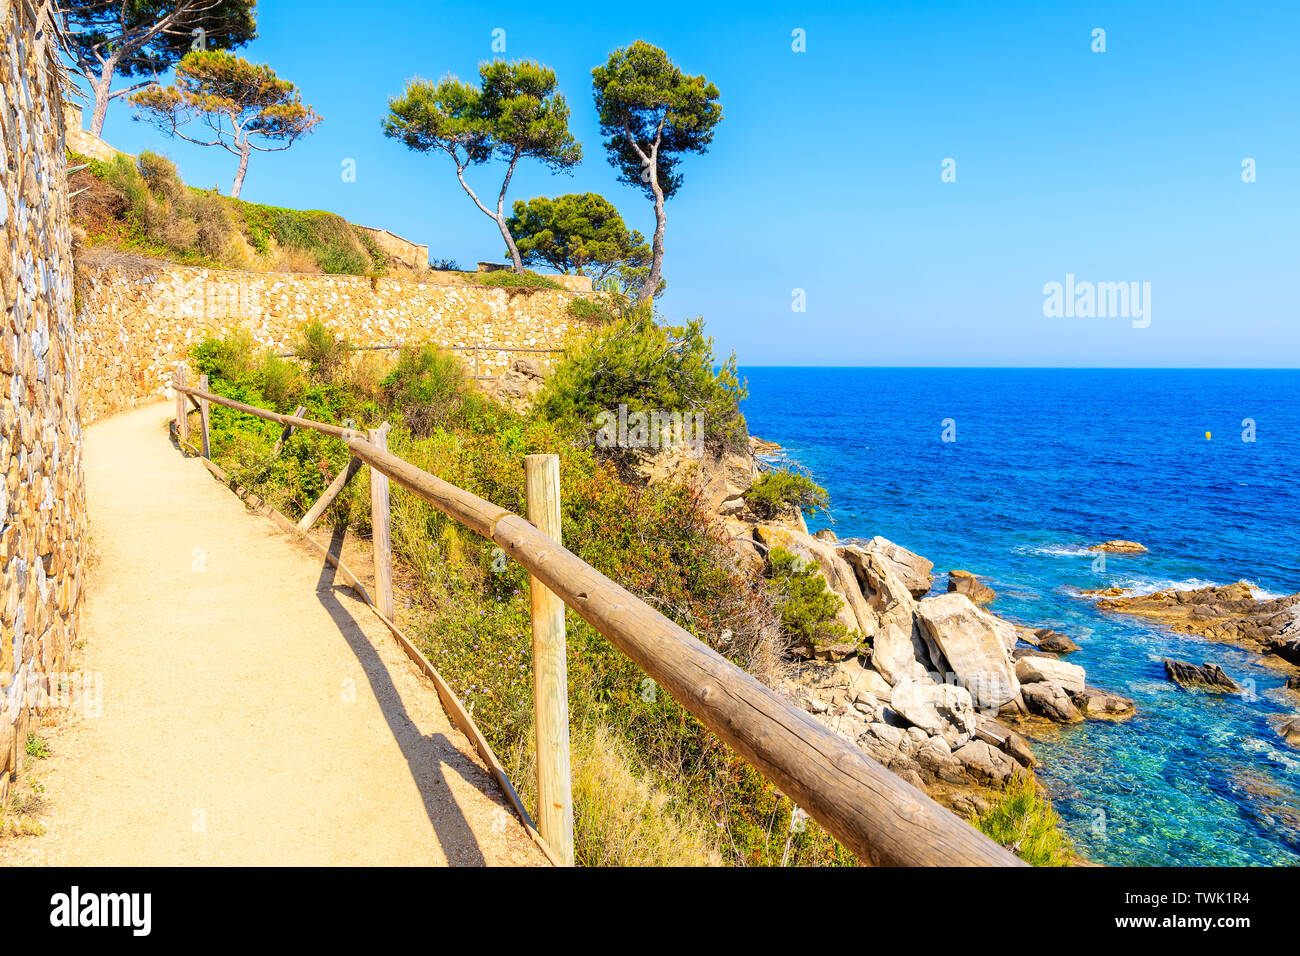 Sentier du littoral le long de la mer bleue, près de Cap Roig, Costa Brava, Espagne Banque D'Images